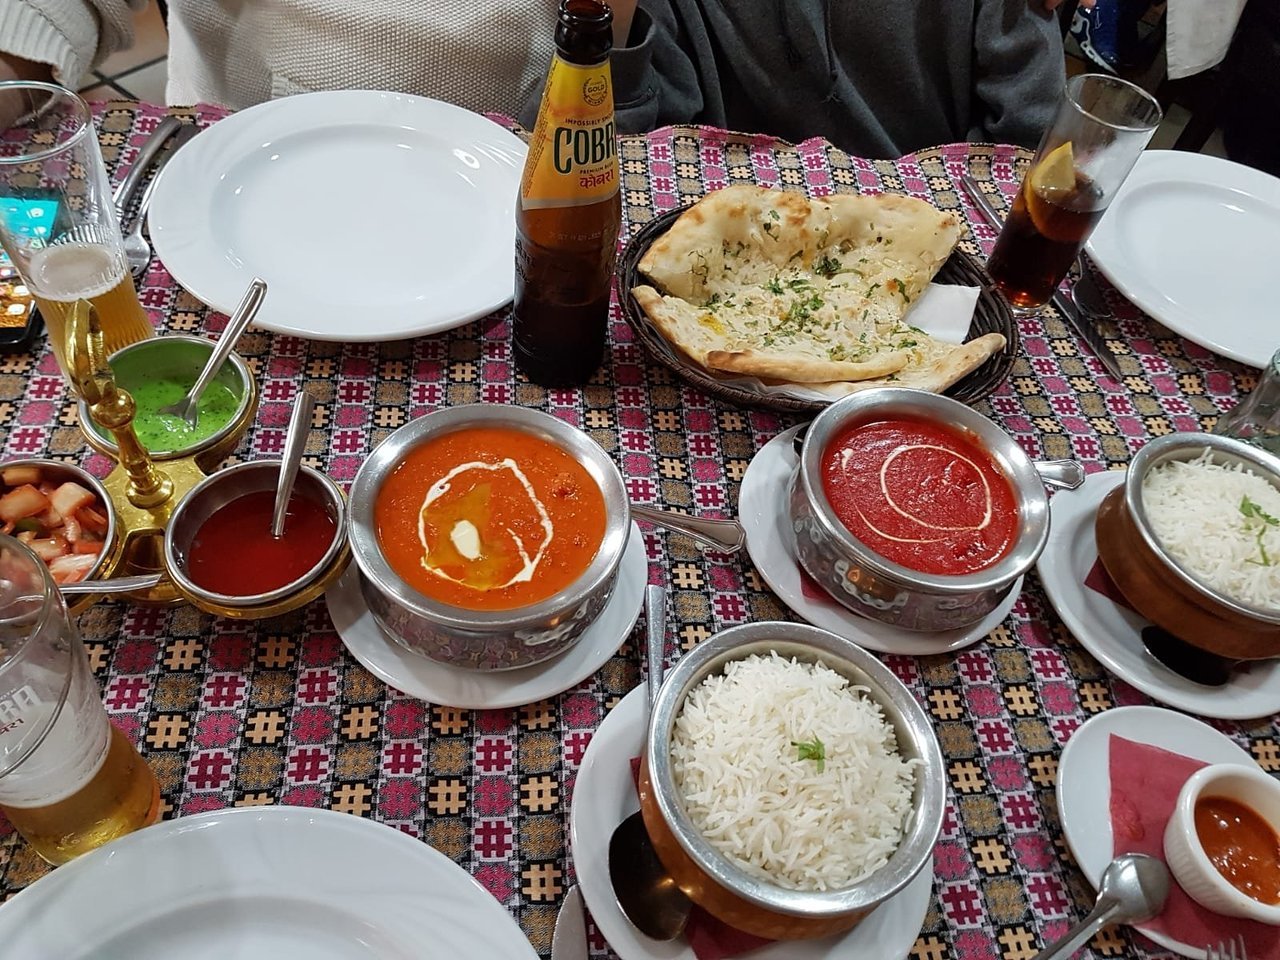 Los restaurantes de comida india mejor valorados de Madrid que arrasan: “No dudéis en probarlo”